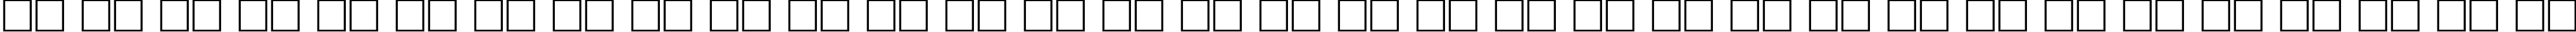 Пример написания русского алфавита шрифтом Antiqua 95b